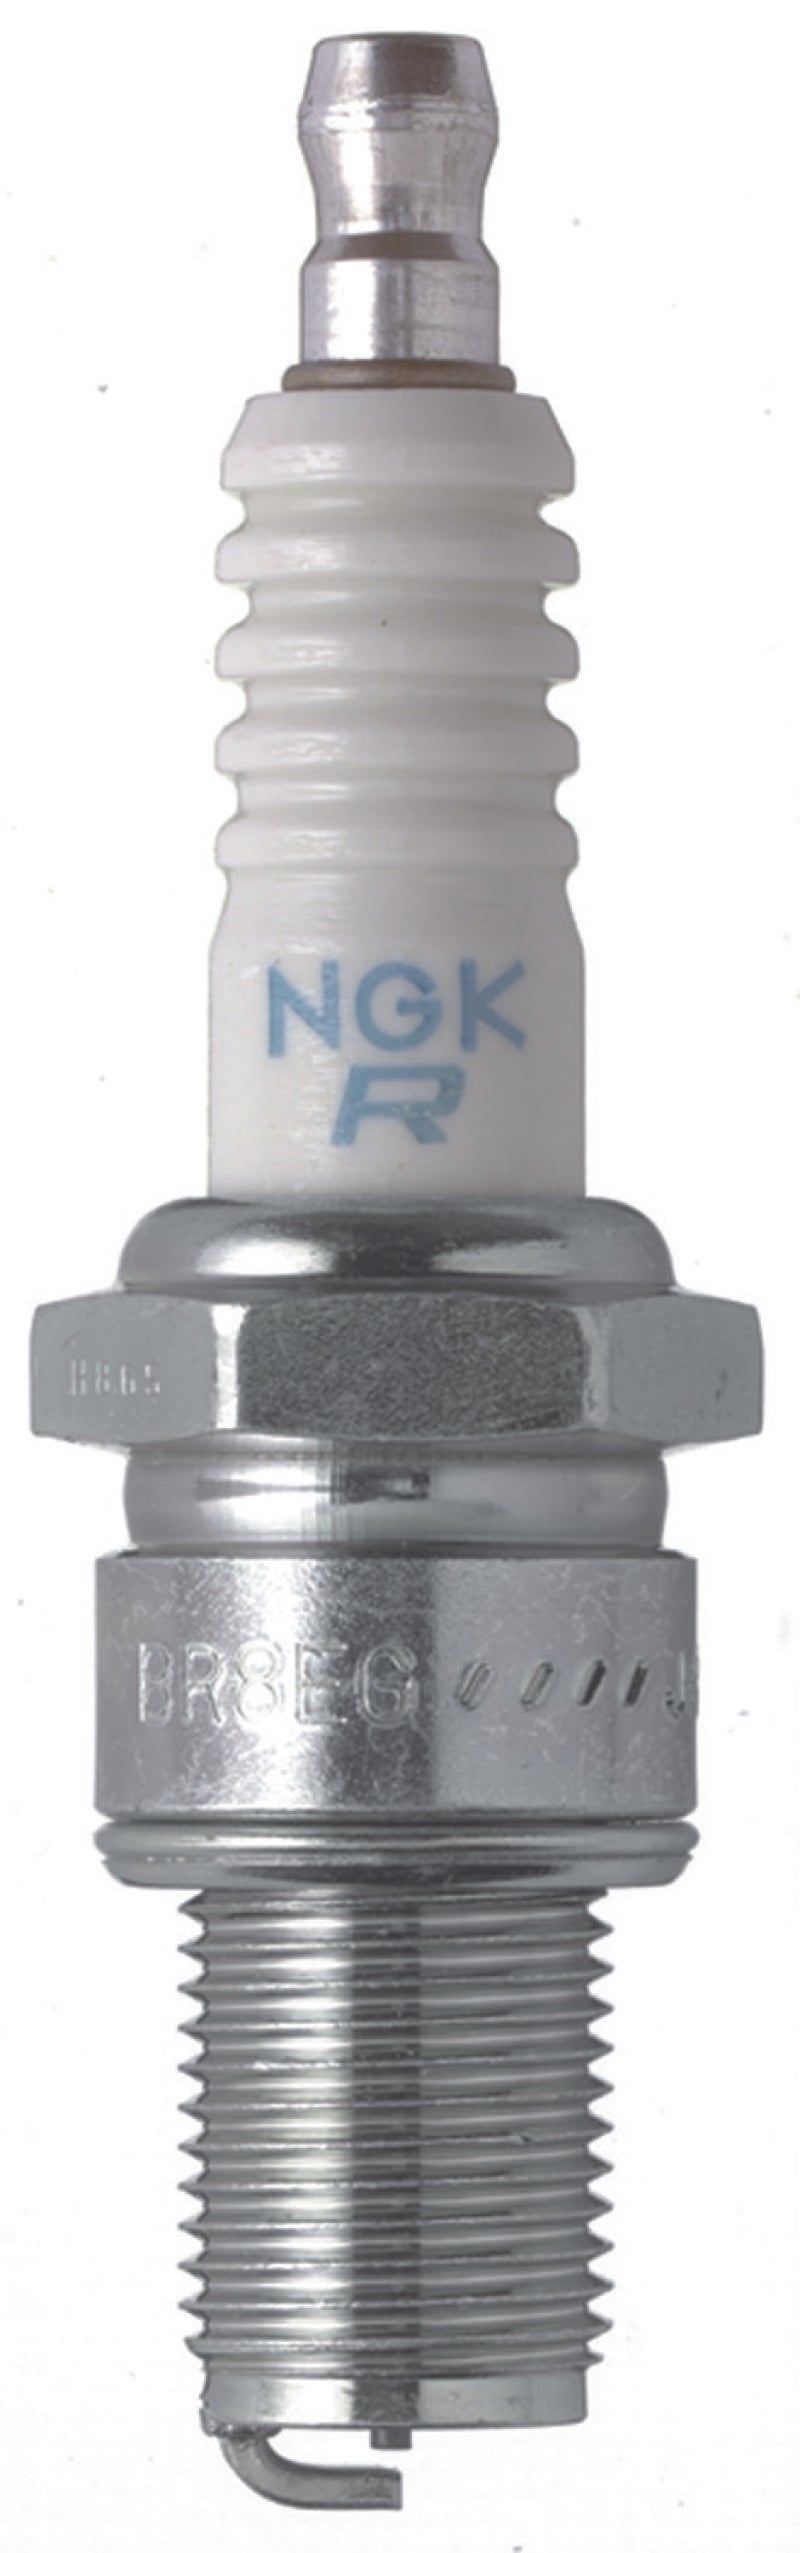 NGK Racing Spark Plug Box of 4 (BR10EG).